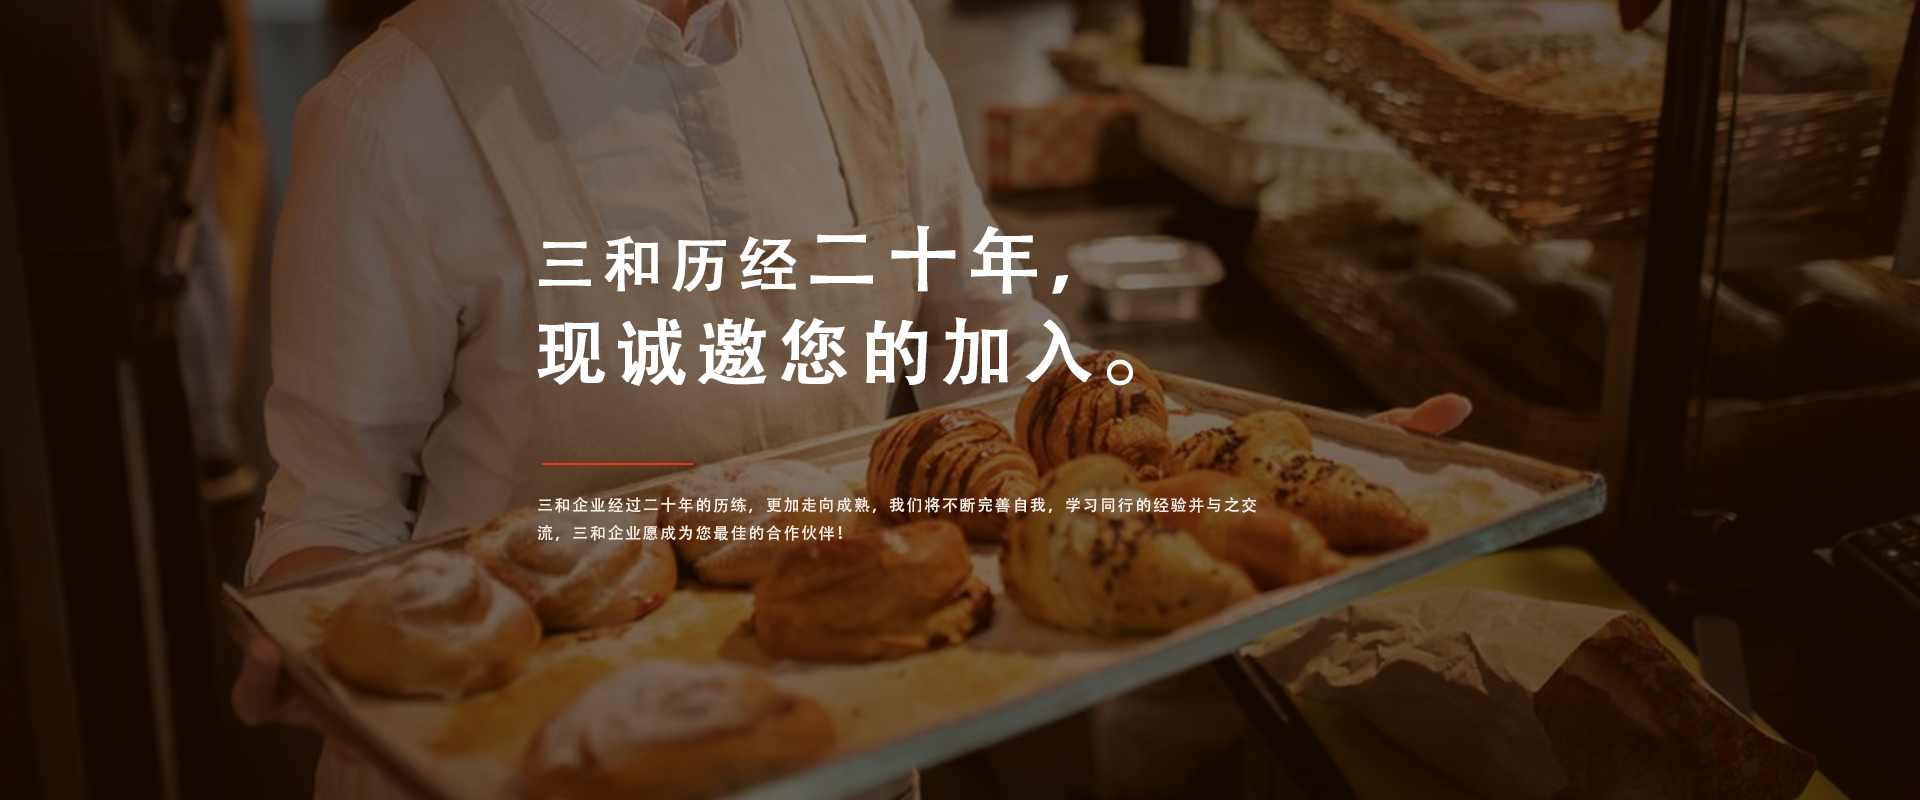 东莞市九游会官网真人游戏第一品牌食品贸易有限公司 